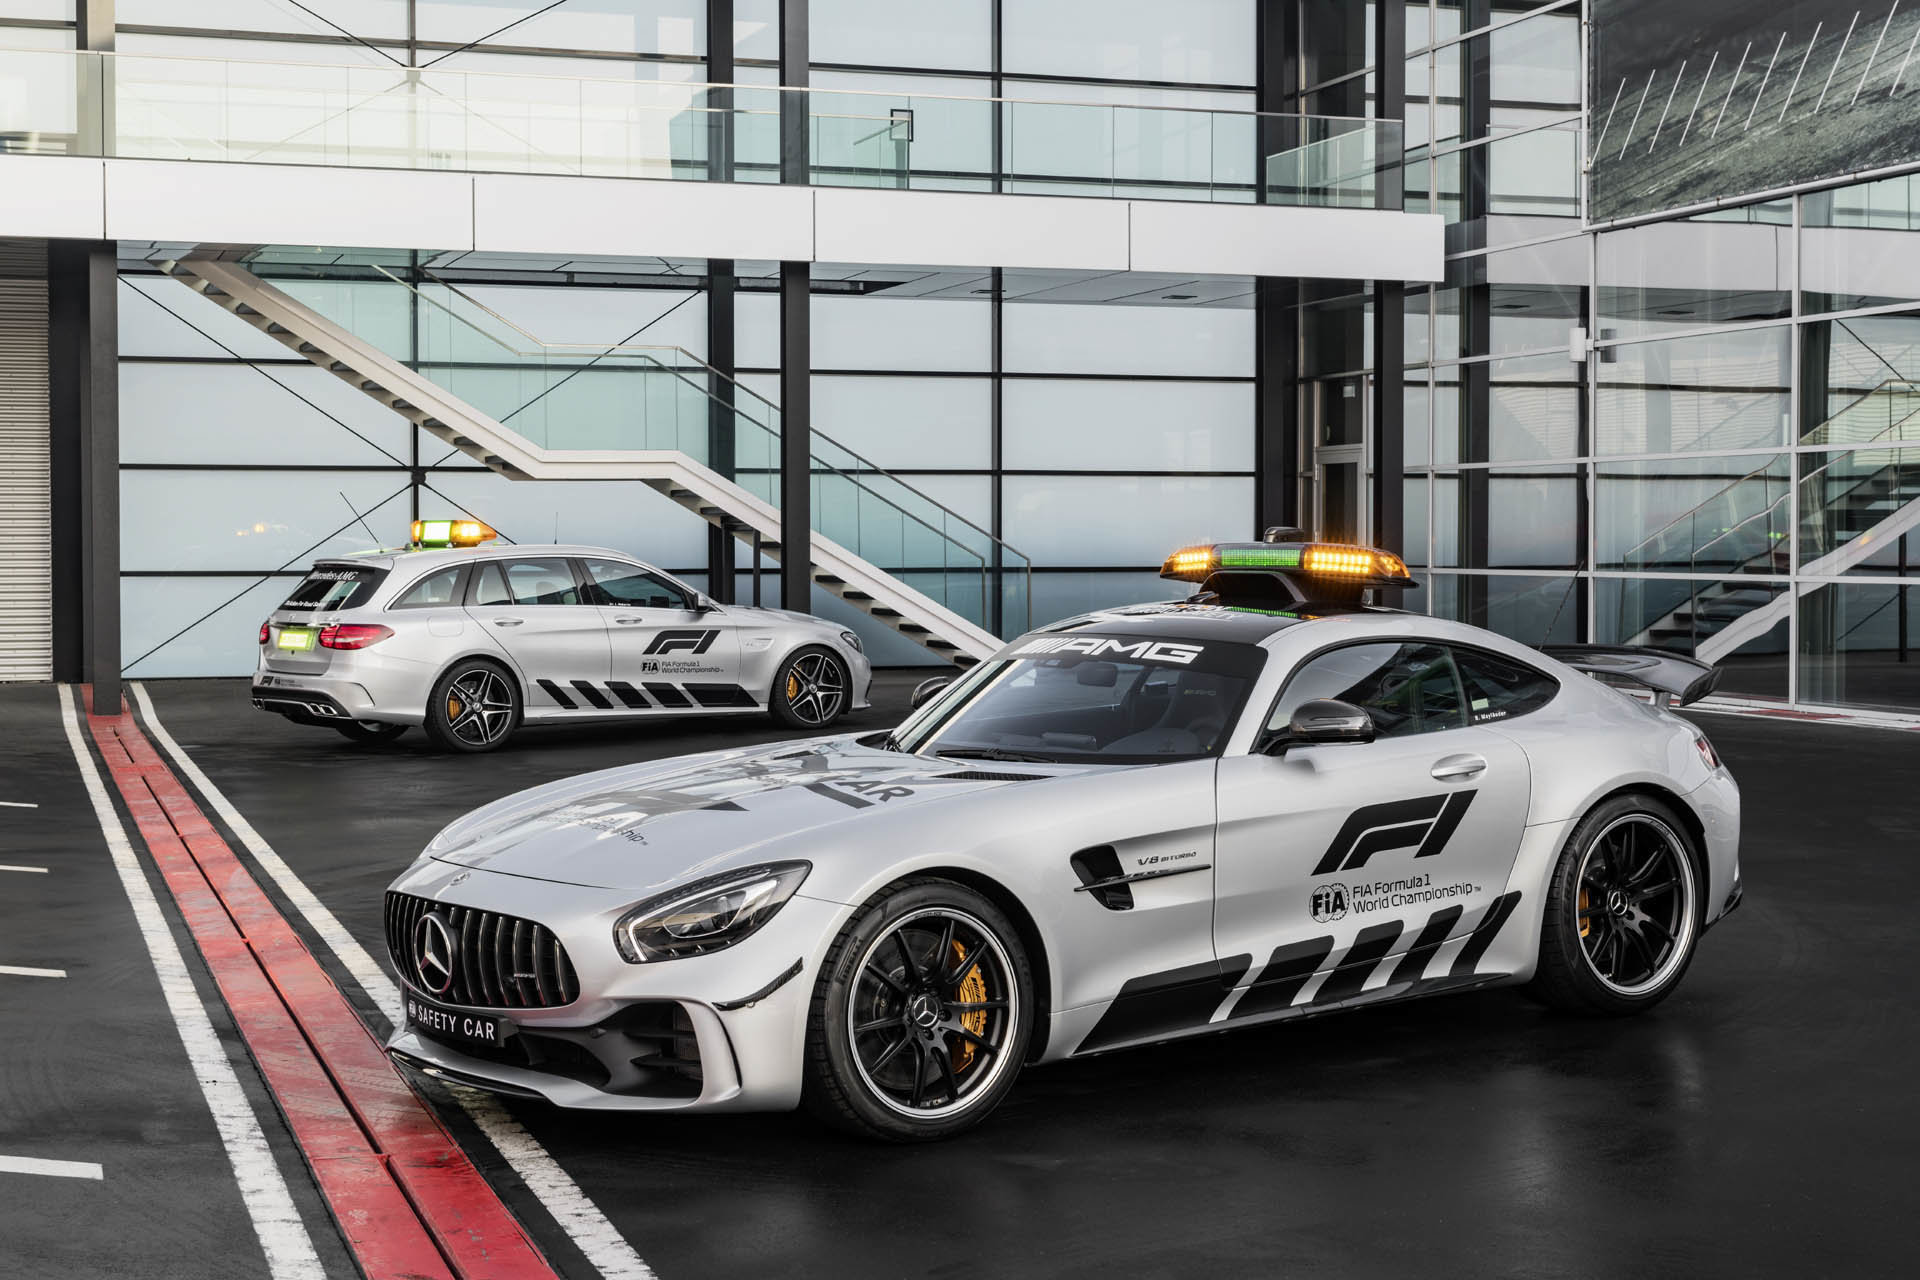 Mercedes-AMG představil nový Safety Car a záchranářský vůz pro závody Formule 1